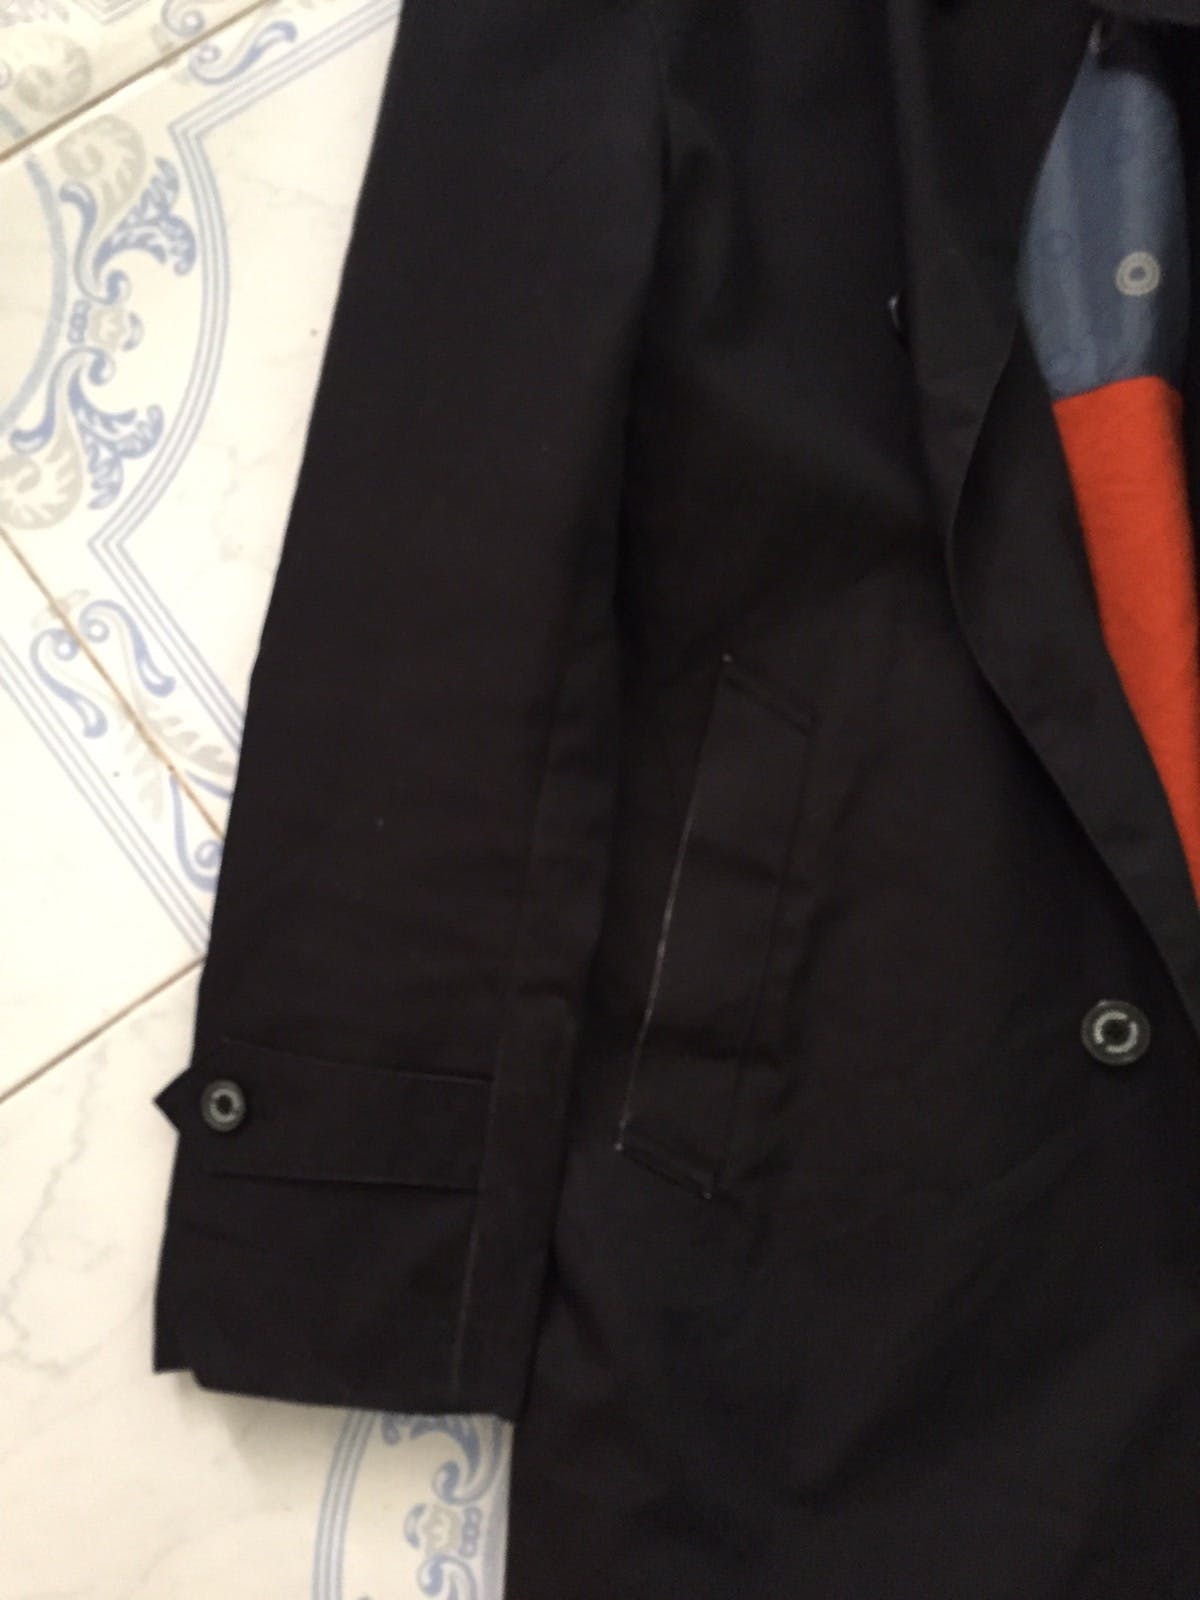 Mackintosh Philosophy Luxurious Black Jacket - 10